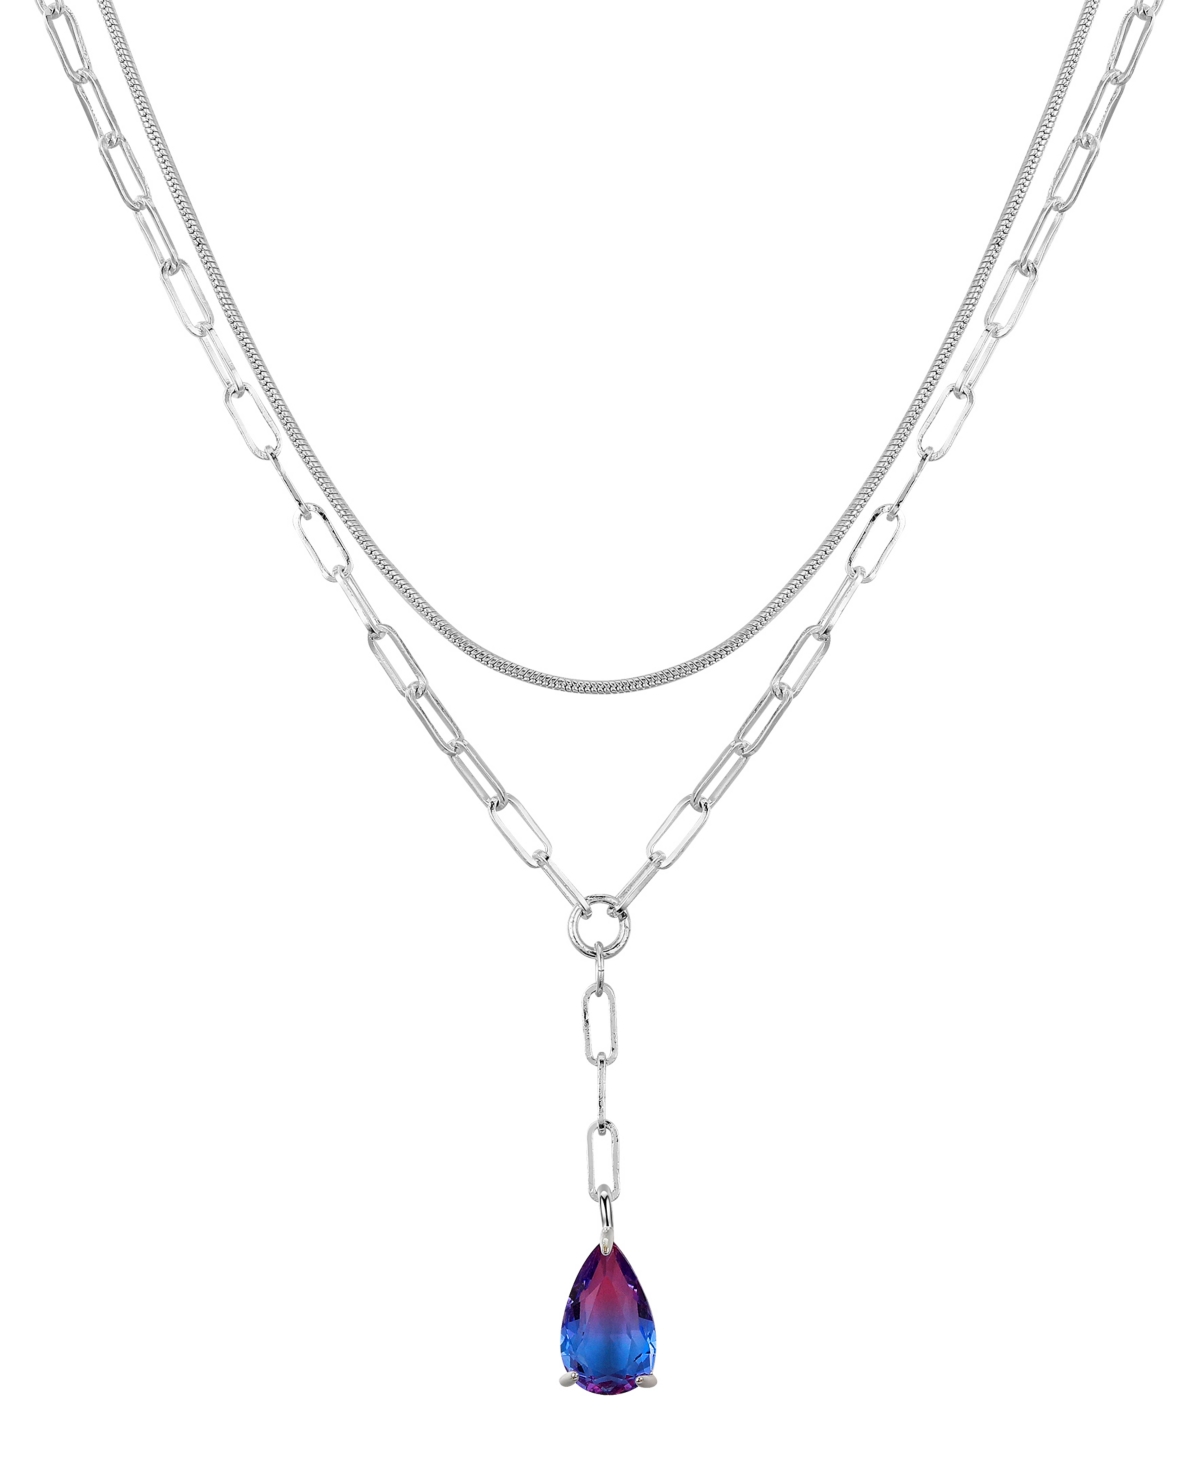 Unwritten Purple Glass Teardrop Layered Y-necklace Set In Silver